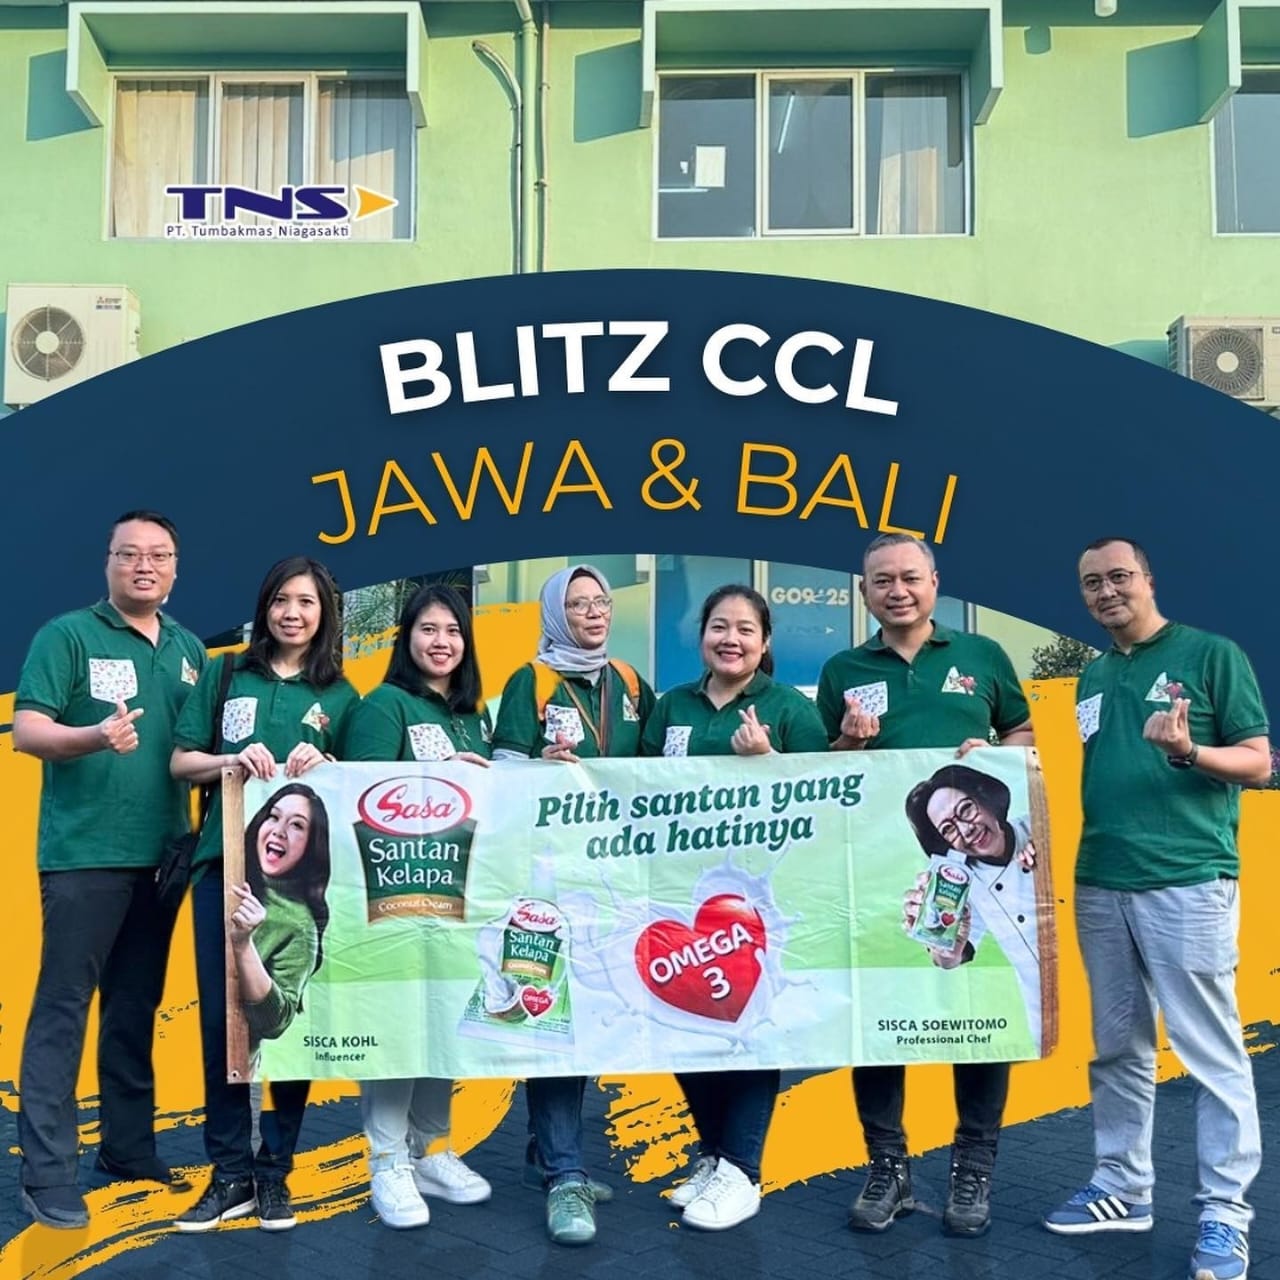 Blitz CCL Jawa & Bali Tumbakmas Niagasakti